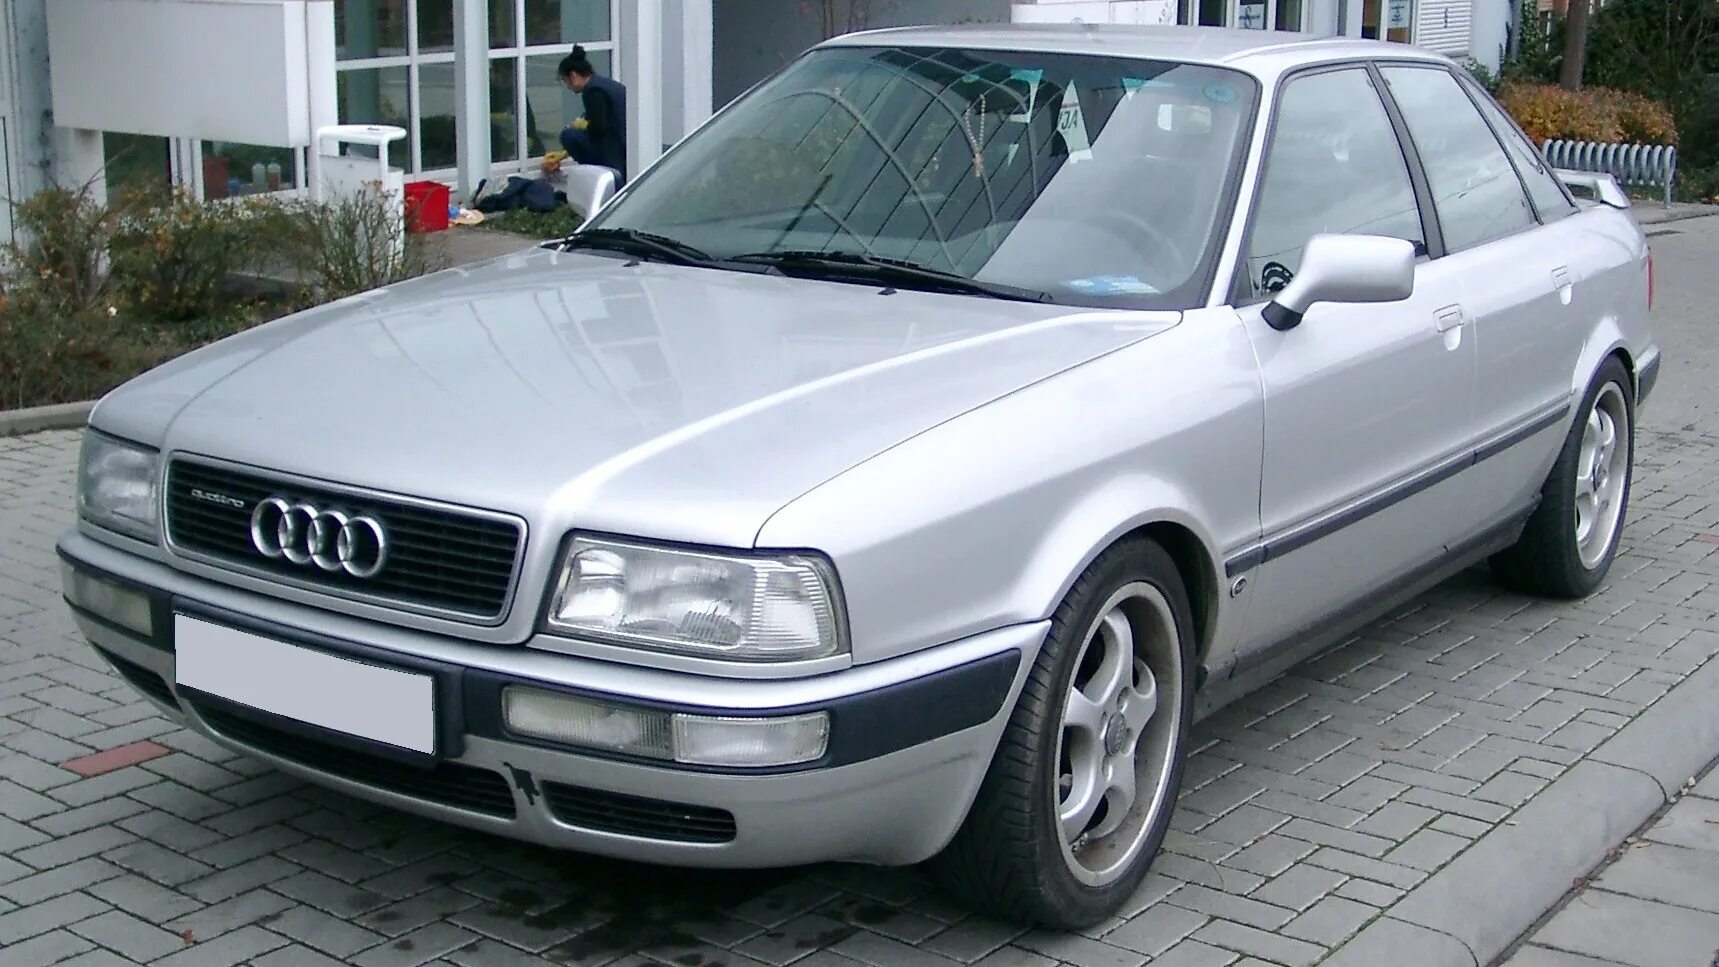 Audi 80 b4 s2. Audi 80 b4 1996. Audi 80 б4. Audi 80 b4 1991 - 1996. Купить ауди 80 в4